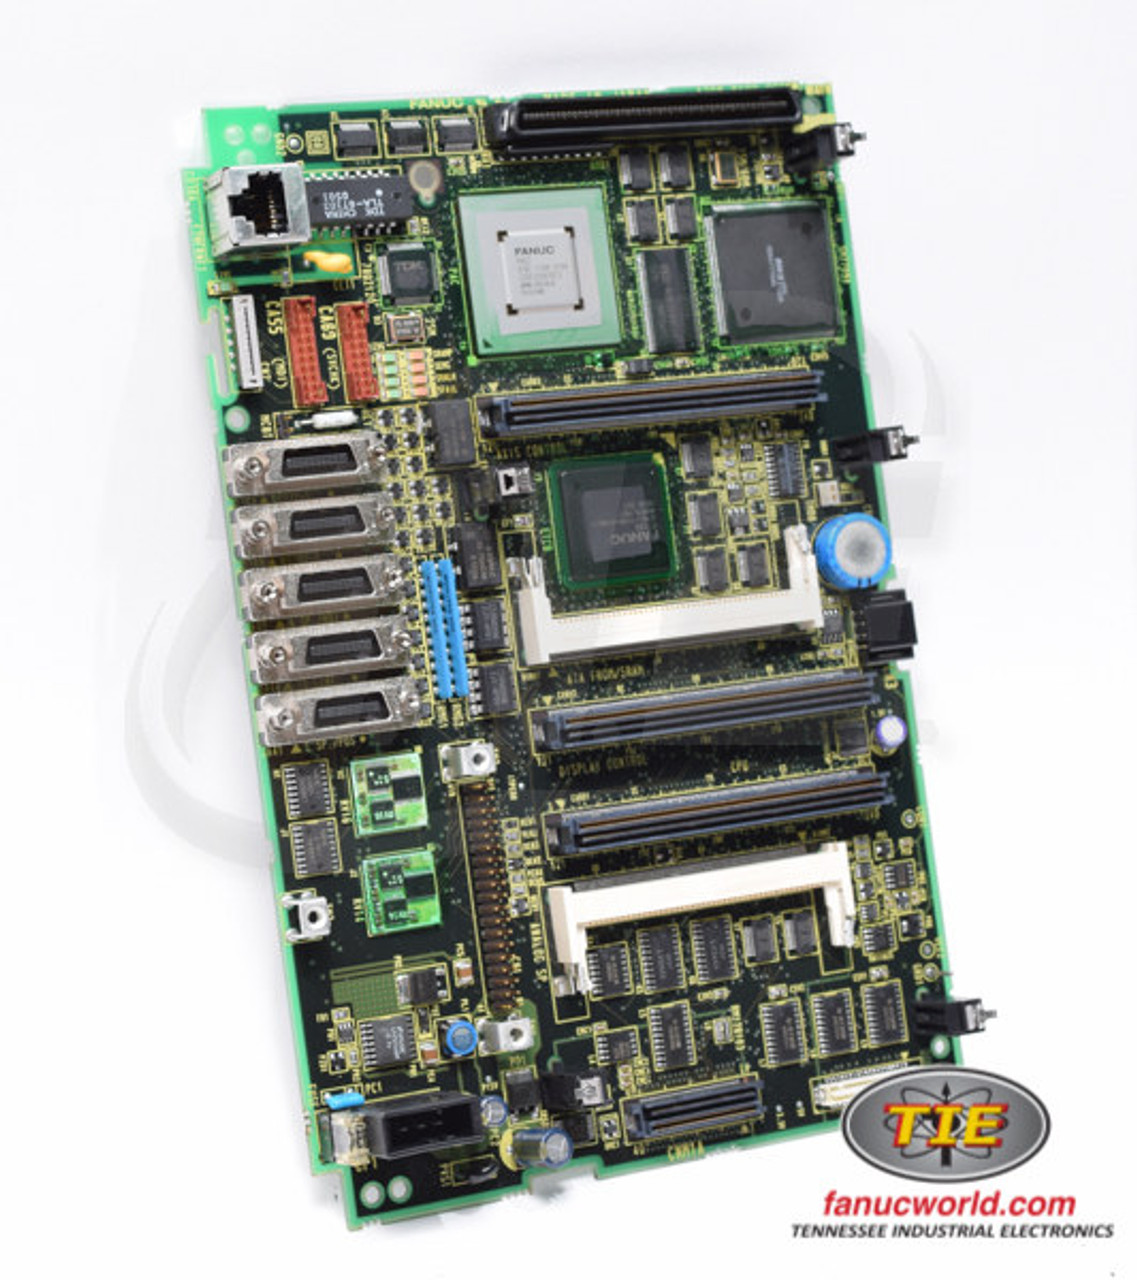 A20B-8100-0661 - 18 i-B CONTROL MAIN CPU PCB